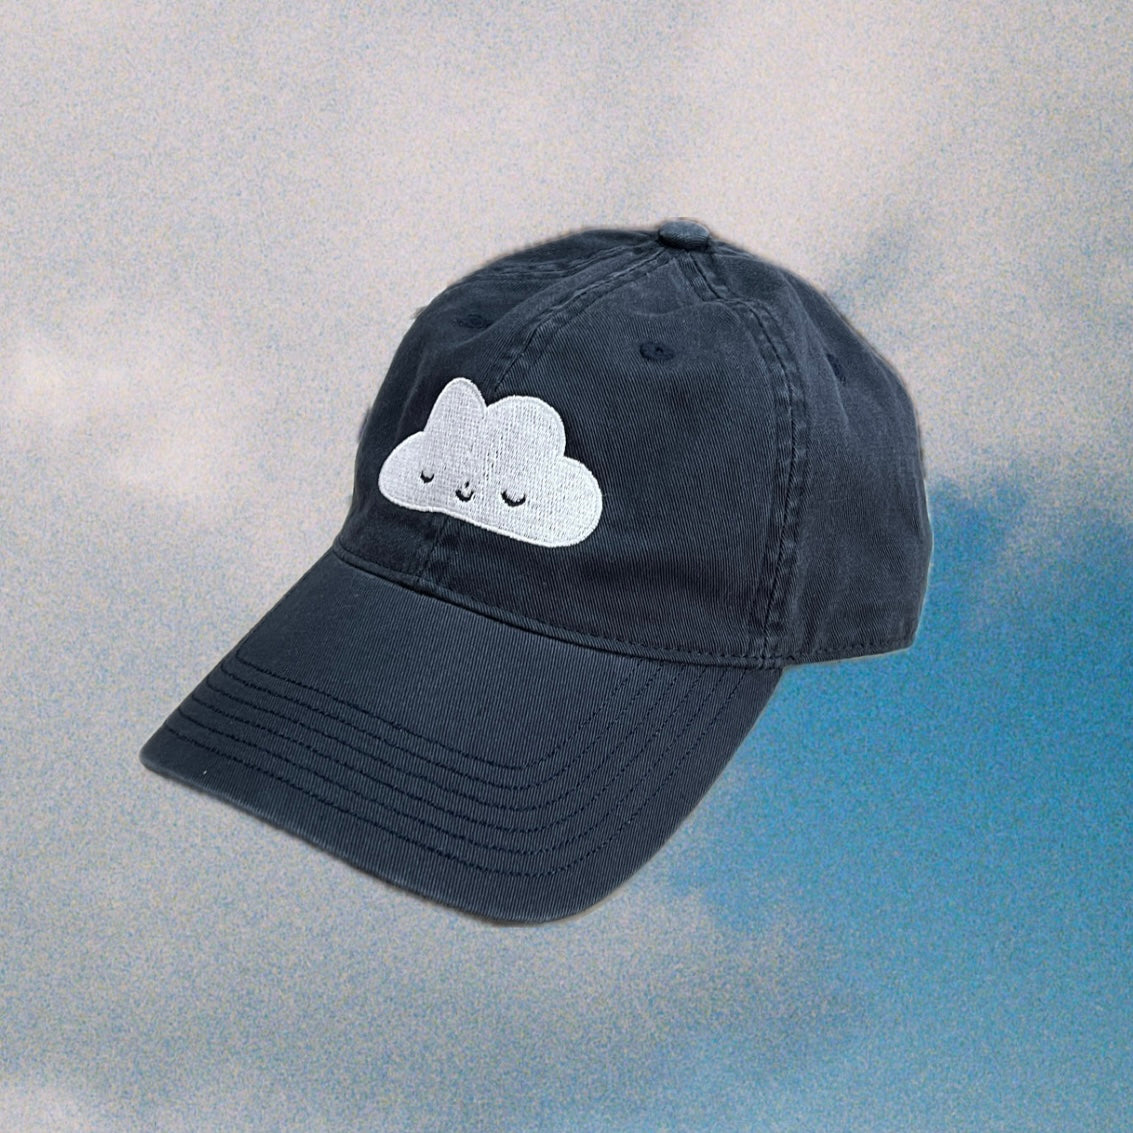 The Cloud Cap!